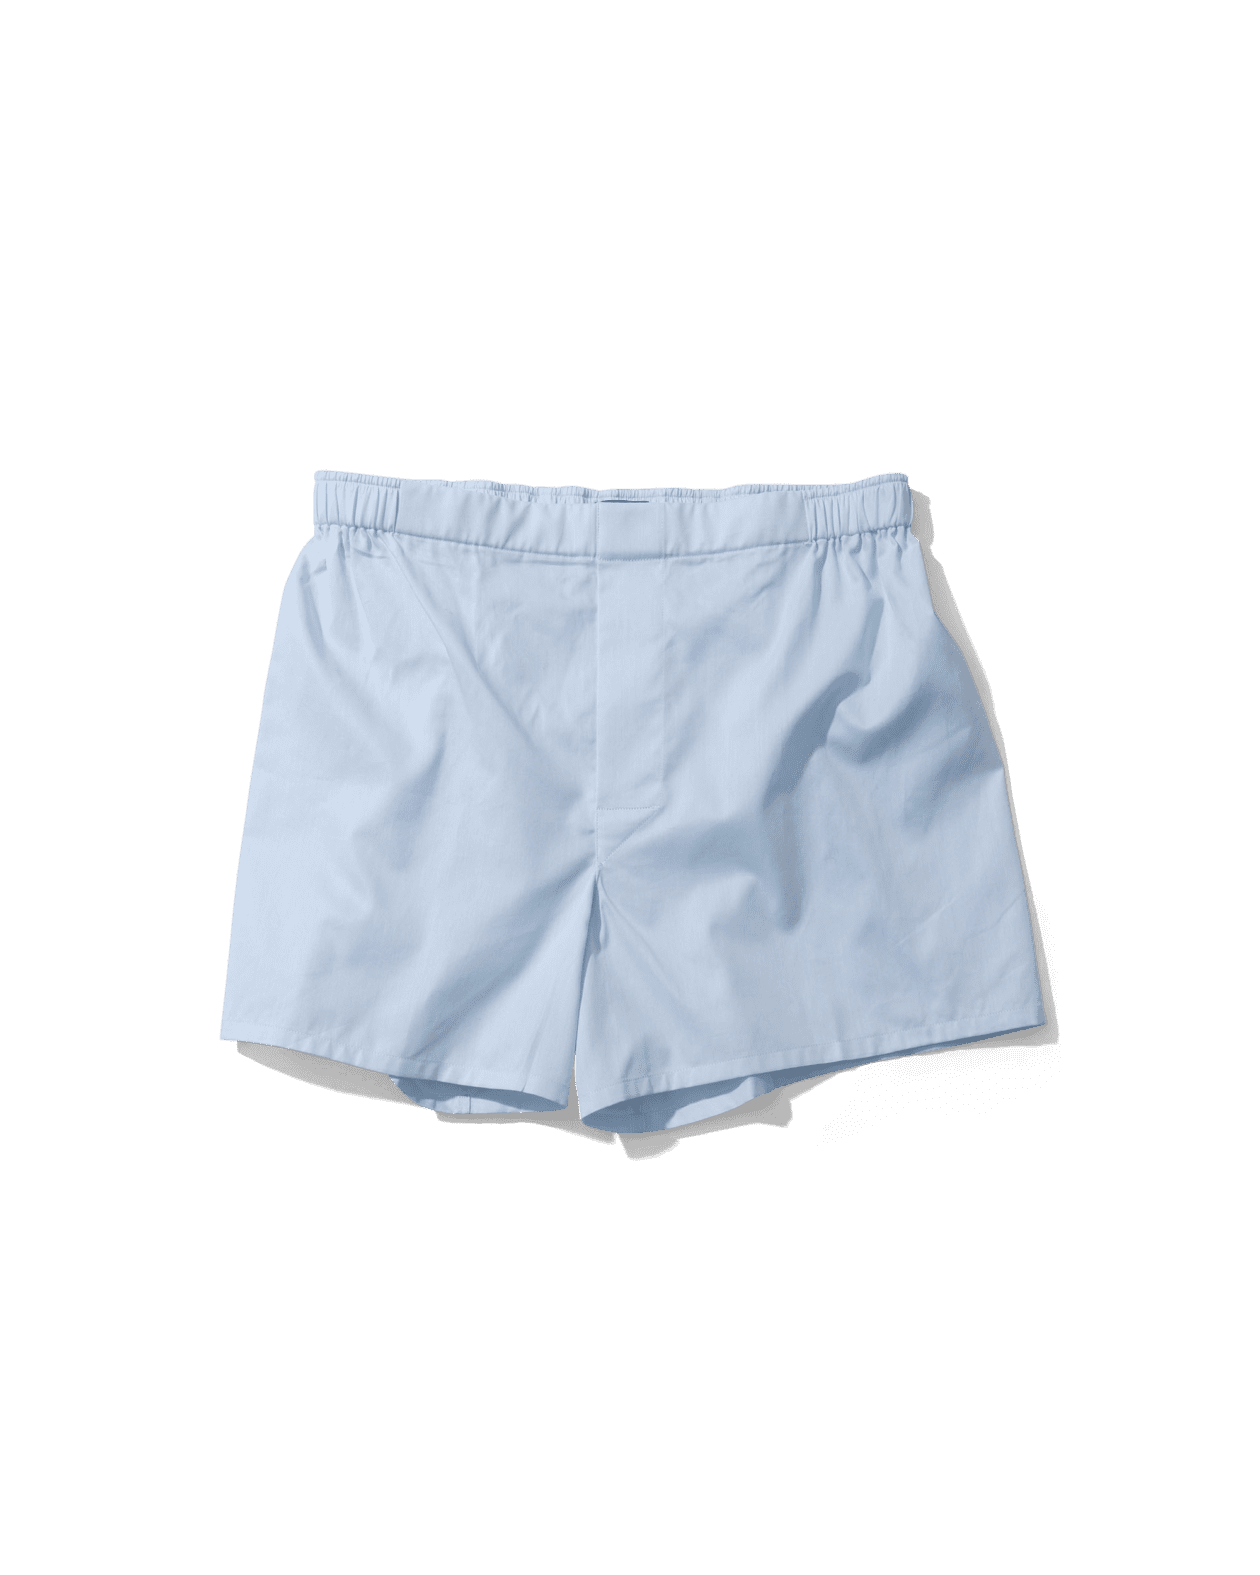 Light blue Cotton Boxer Shorts